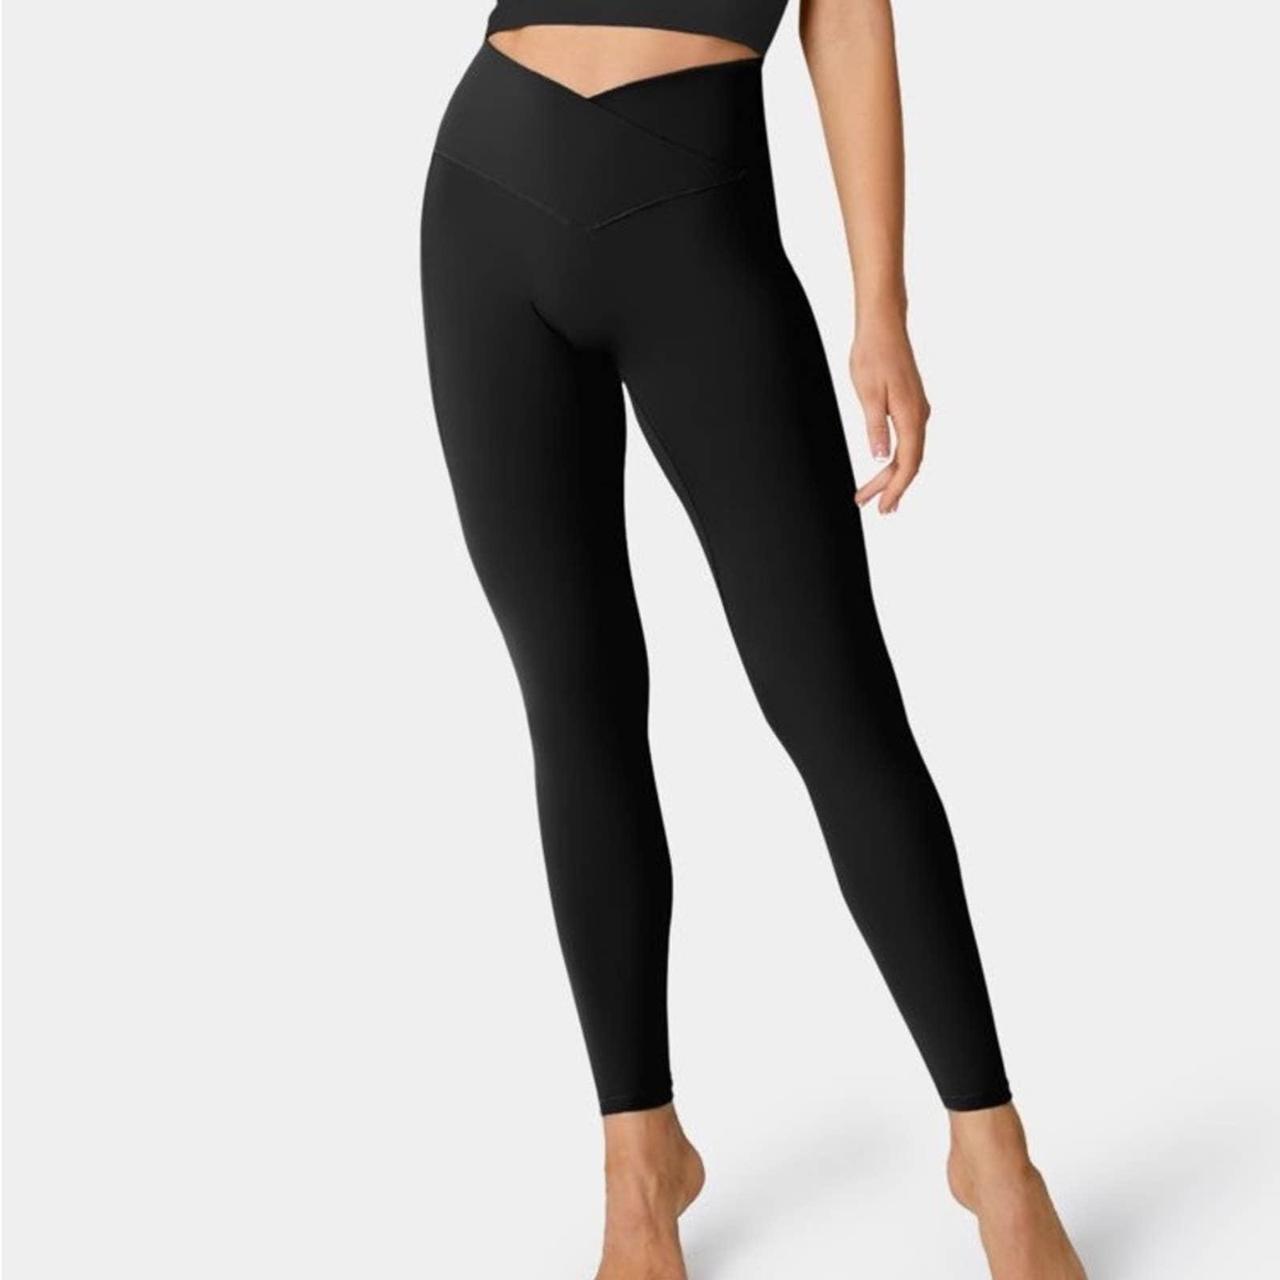 Halara leggings Black size XS 7/8 length Super - Depop